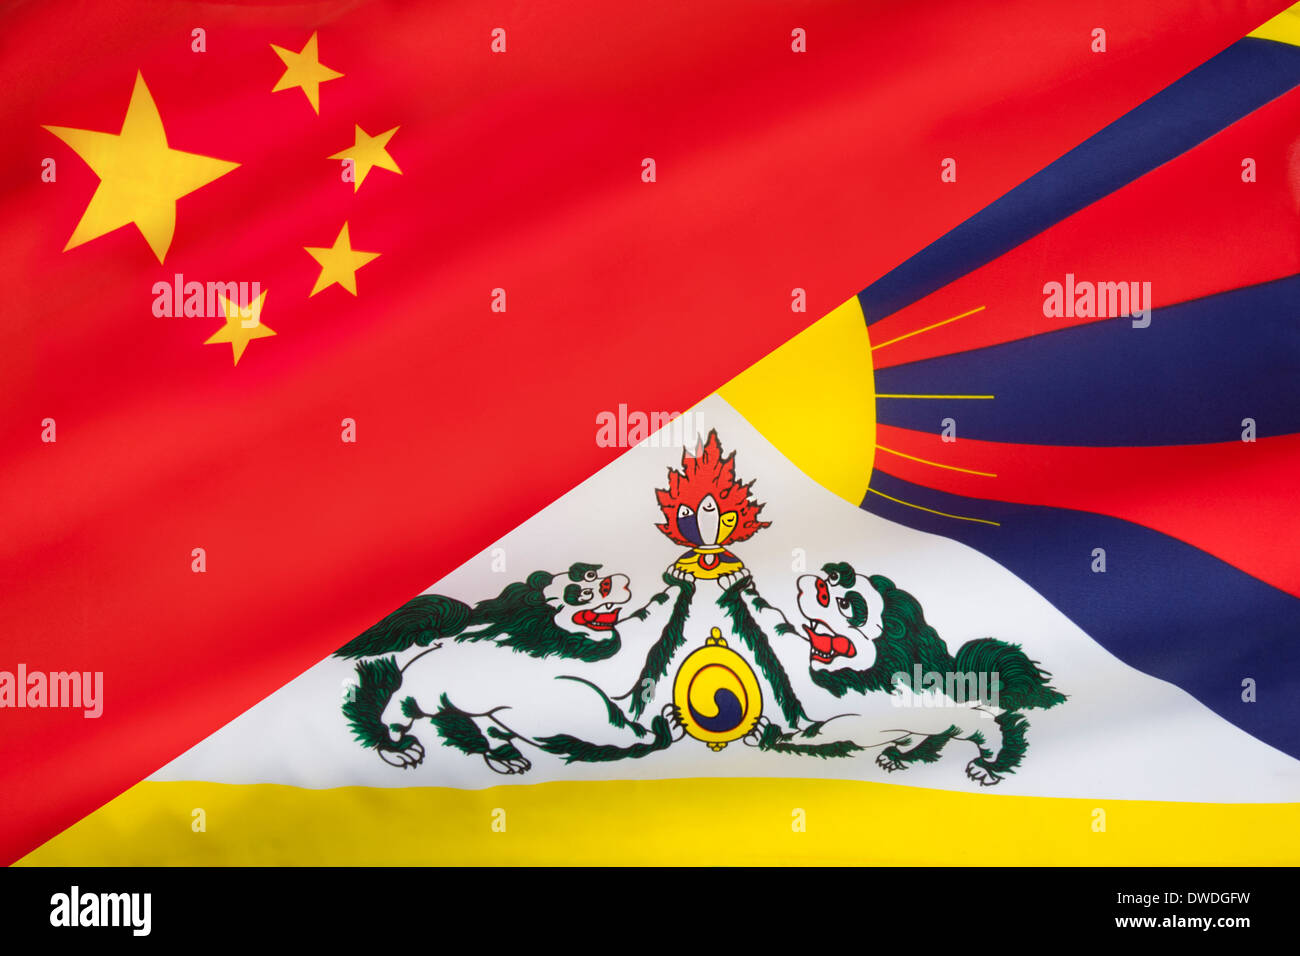 Drapeau de la Chine mélangé avec le drapeau du Tibet libre Banque D'Images